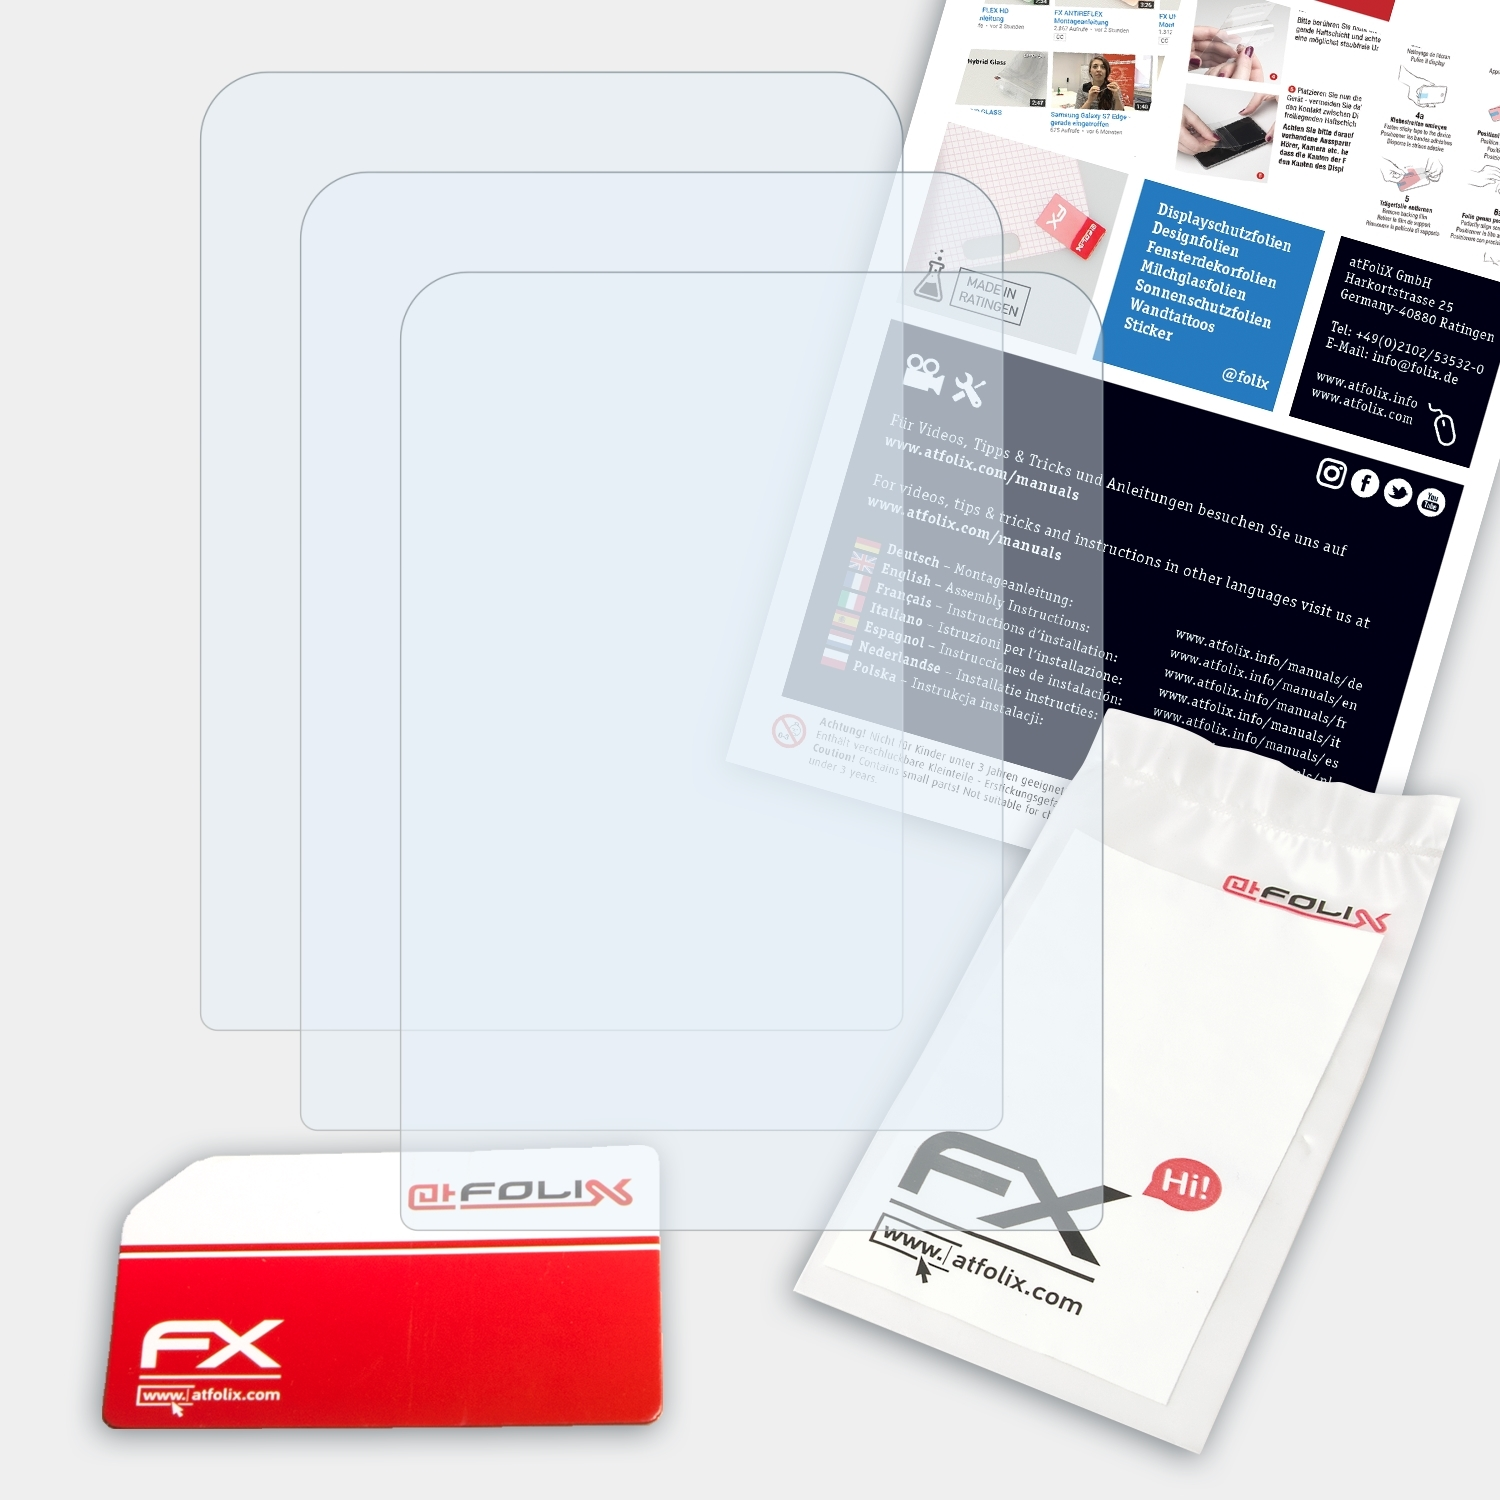 ATFOLIX 3x FX-Clear Displayschutz(für Doro 715) PhoneEasy